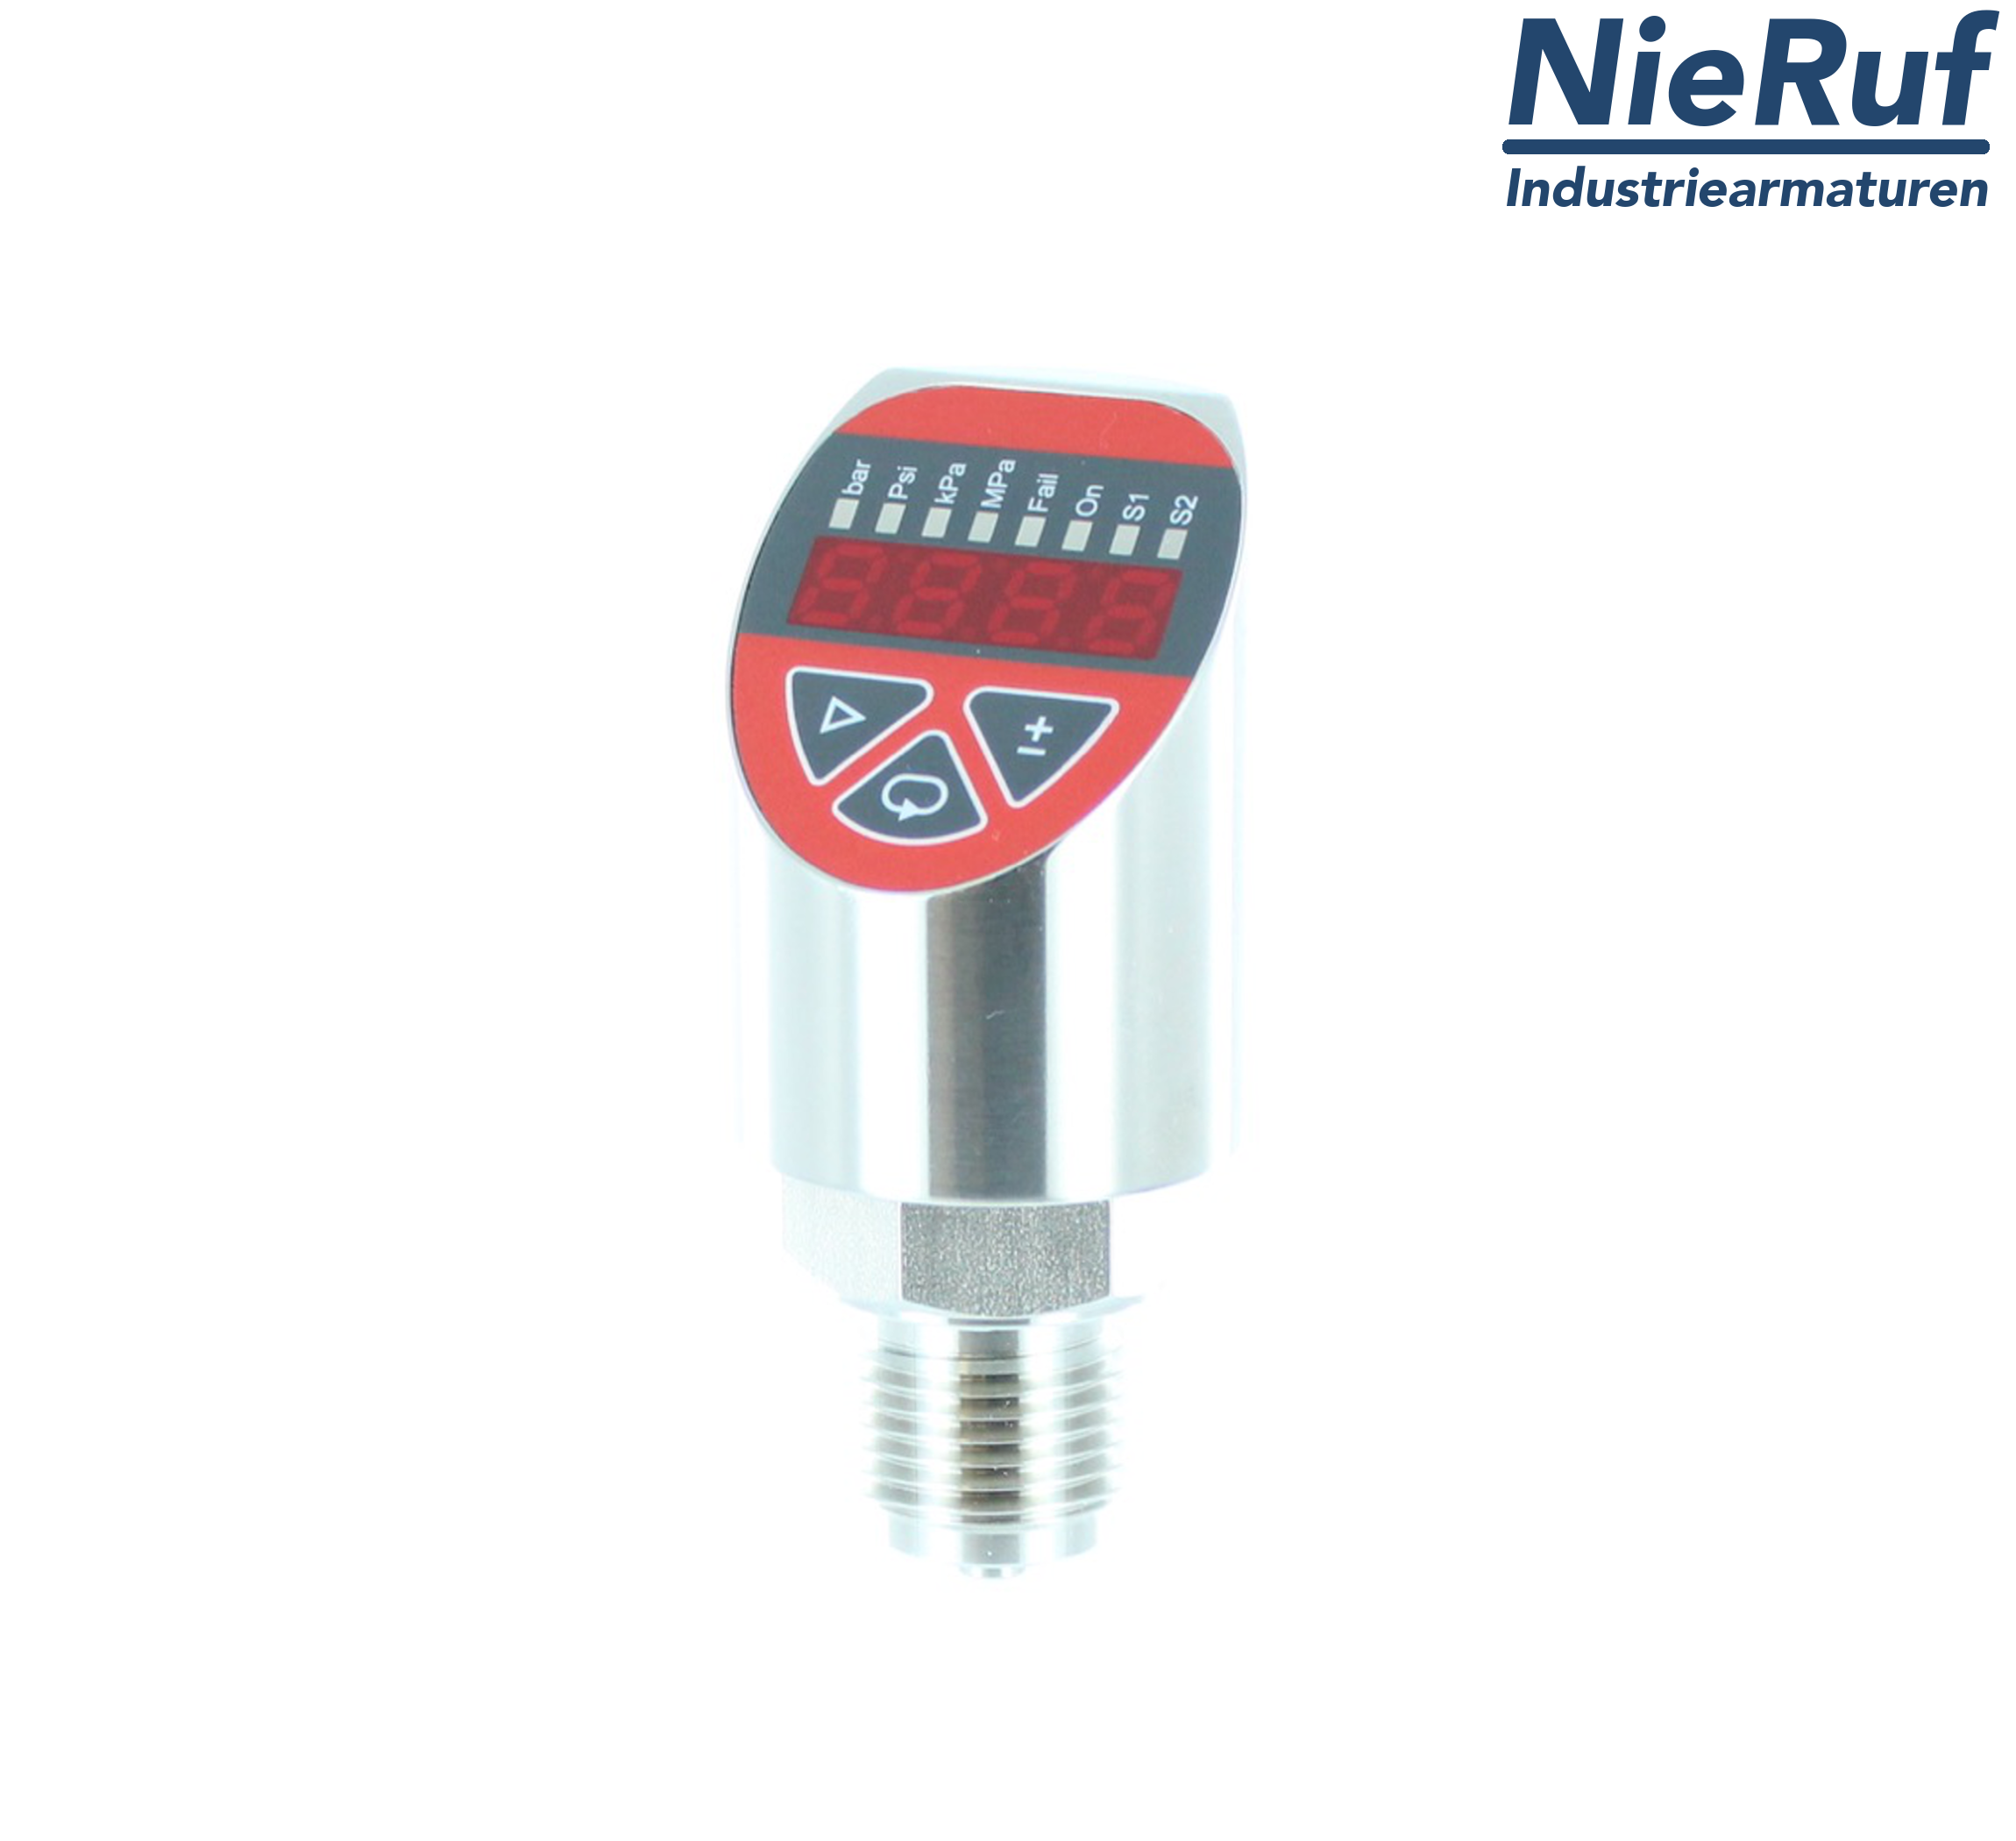 digital pressure sensor G 1/2" B IB 5-wire: 2xPNP, 1x4 - 20mA FPM 0,0 - 100,0 bar